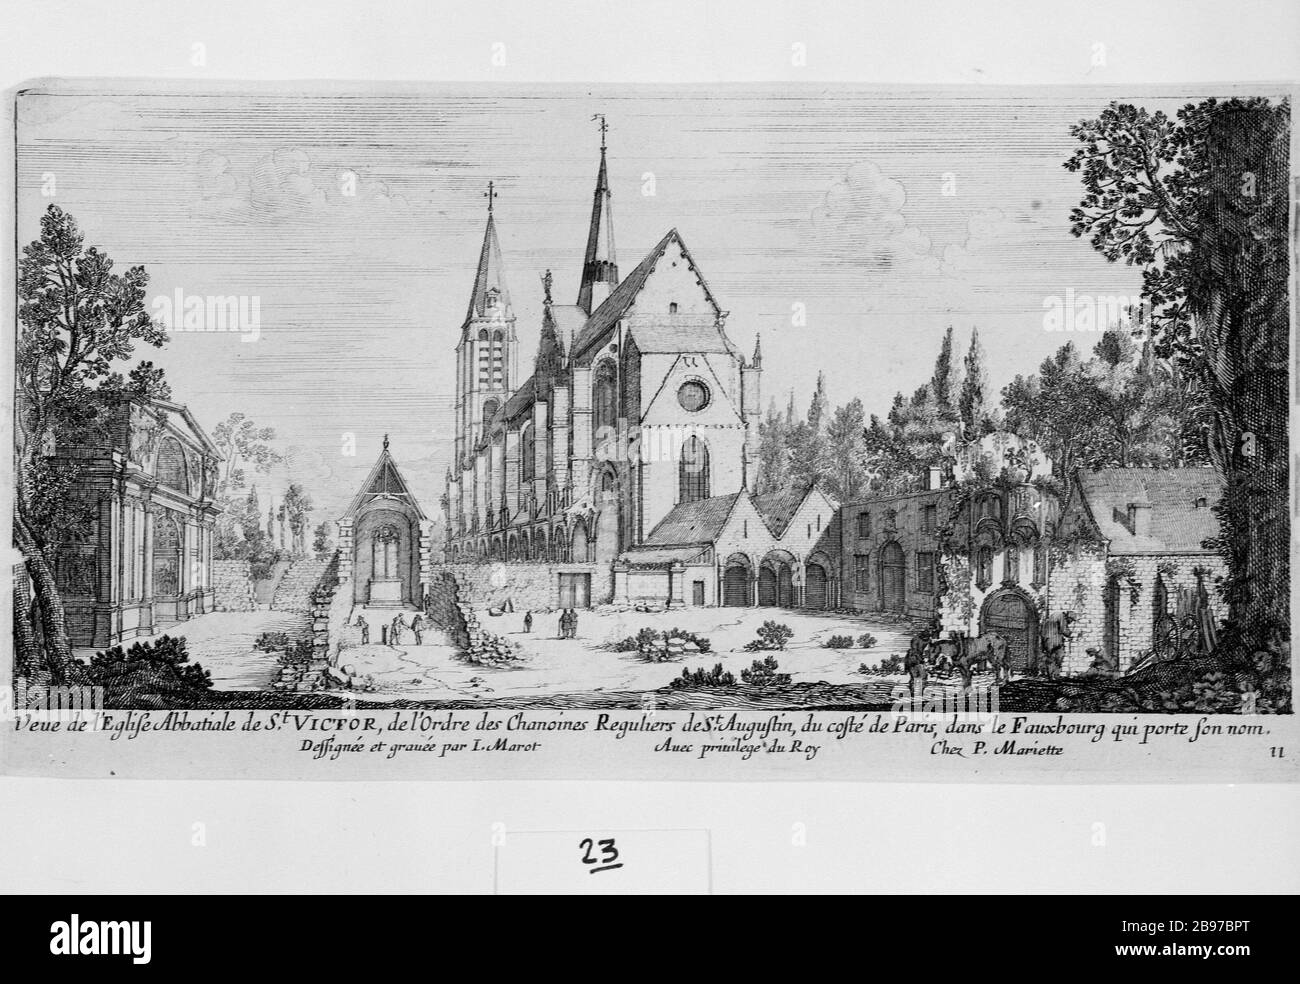 ABBAYE DE St-VICTOR, PARIS Jean Marot et Pierre Mariette. 'L'Eglise abbatale de Saint-Victor, Paris (Vème arr.)'. Eau-forte, 1727. Paris, musée Carnavalet. Banque D'Images